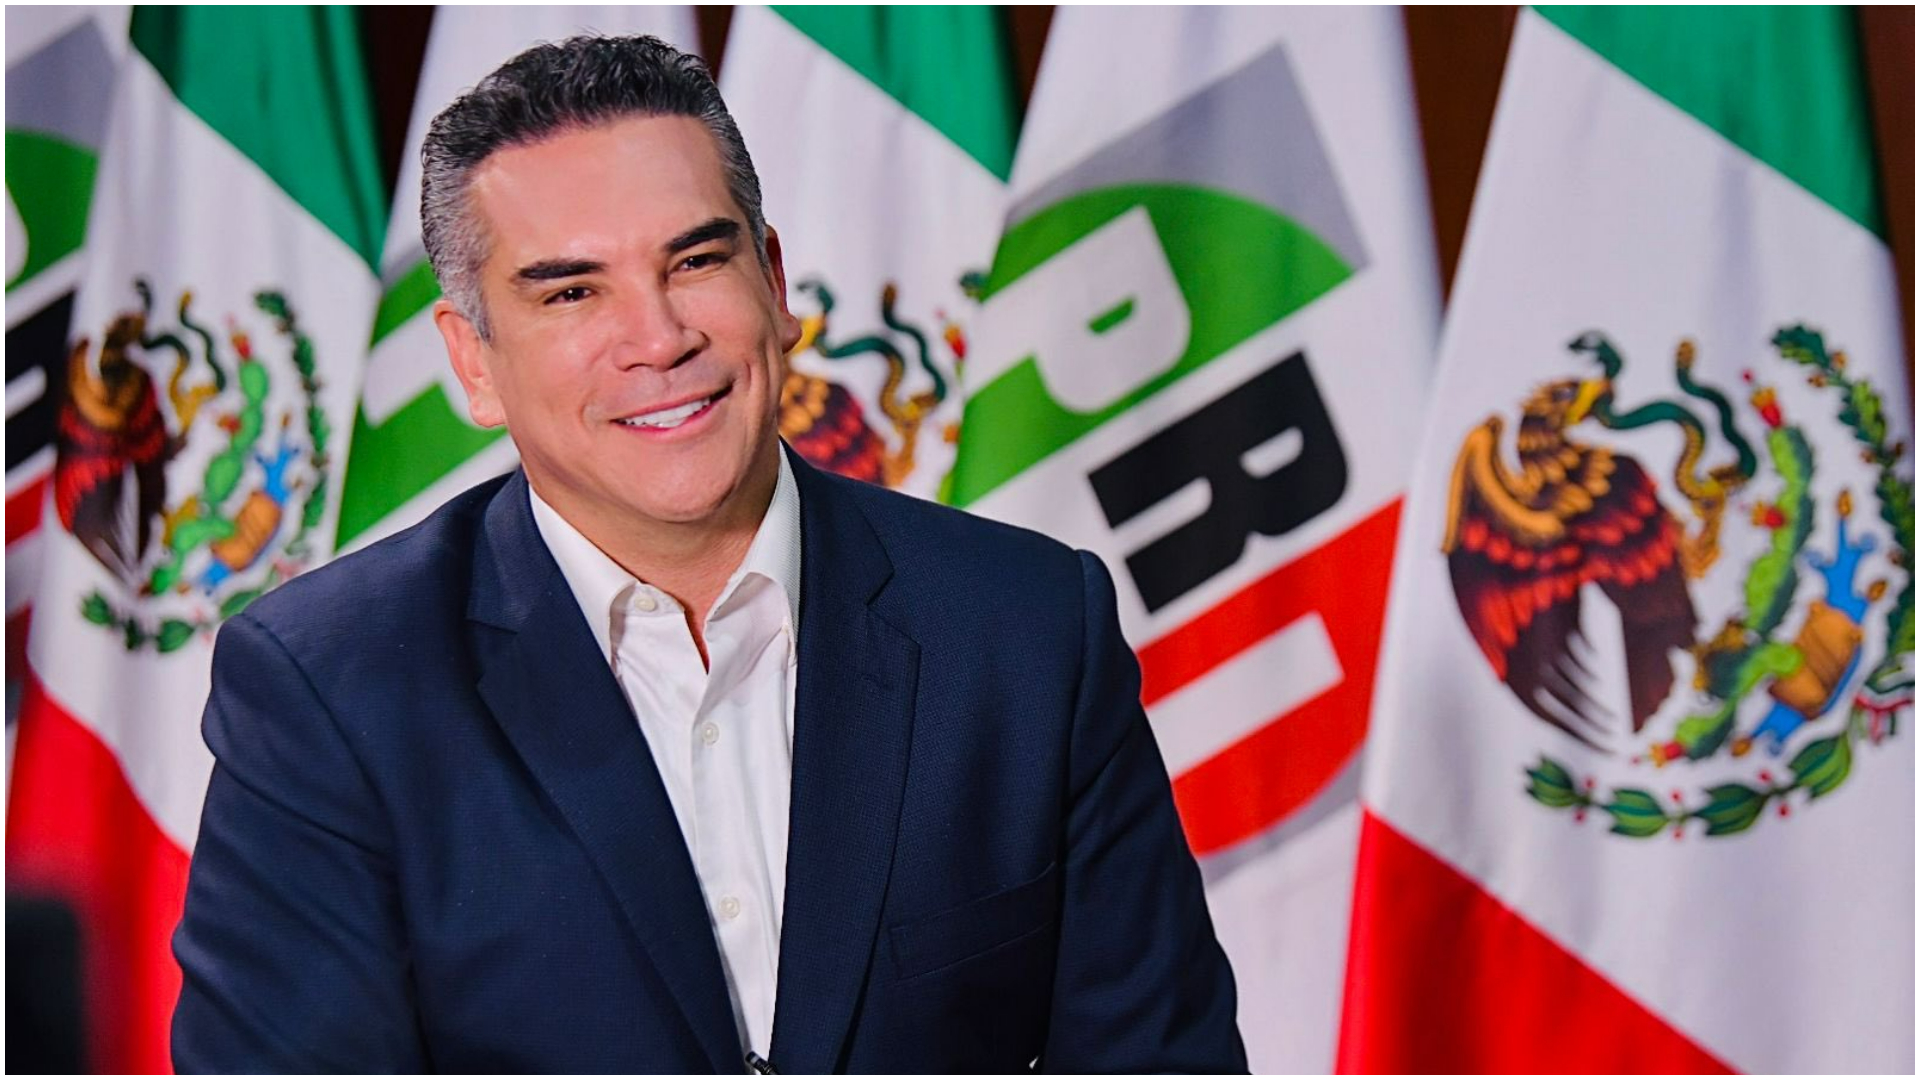 “No vamos a permitir que se quieran robar las elecciones”: Alito Moreno habló sobre presunto fraude en Edomex